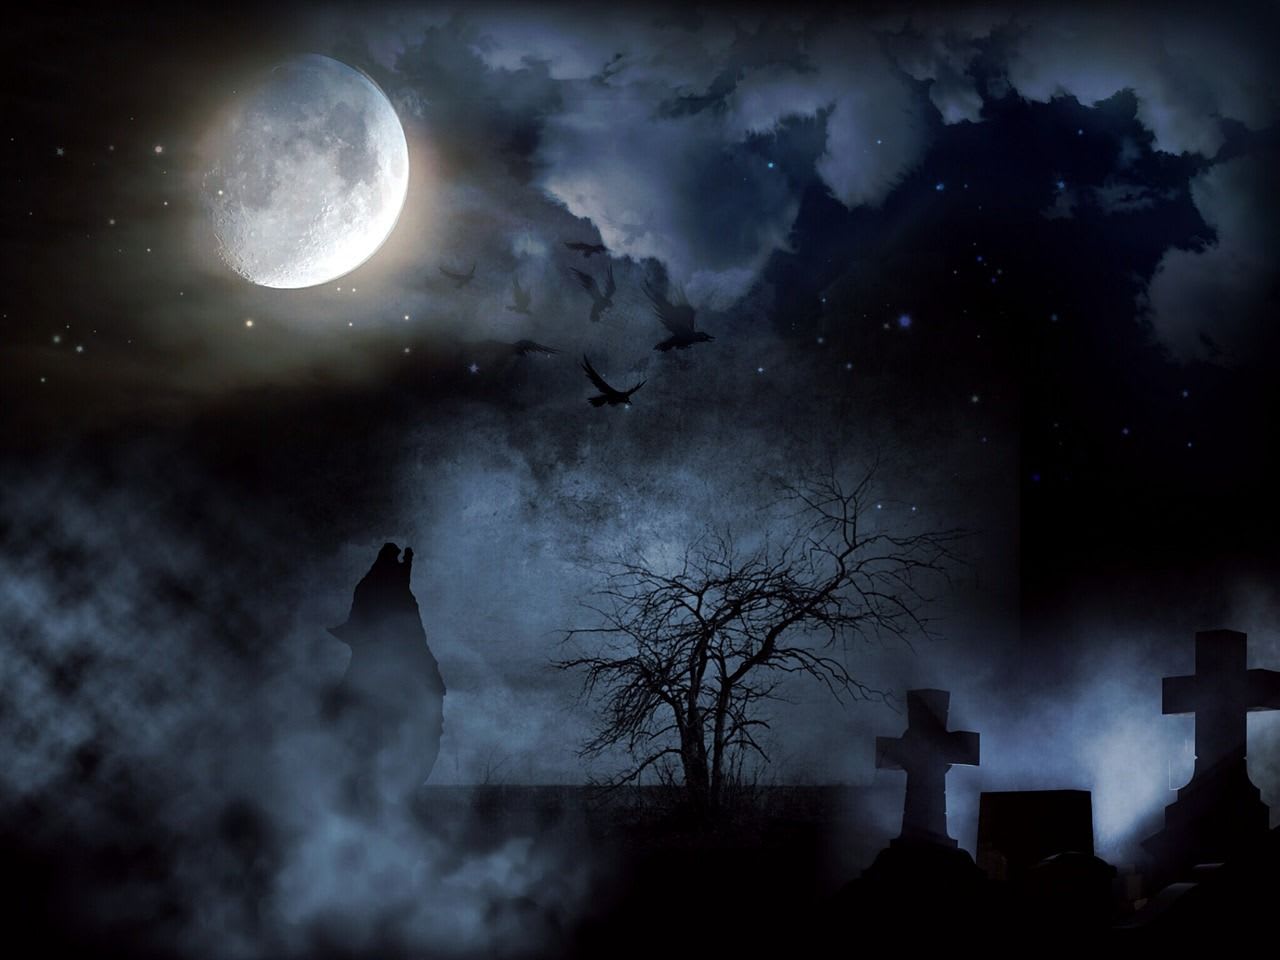 a graveyard at night